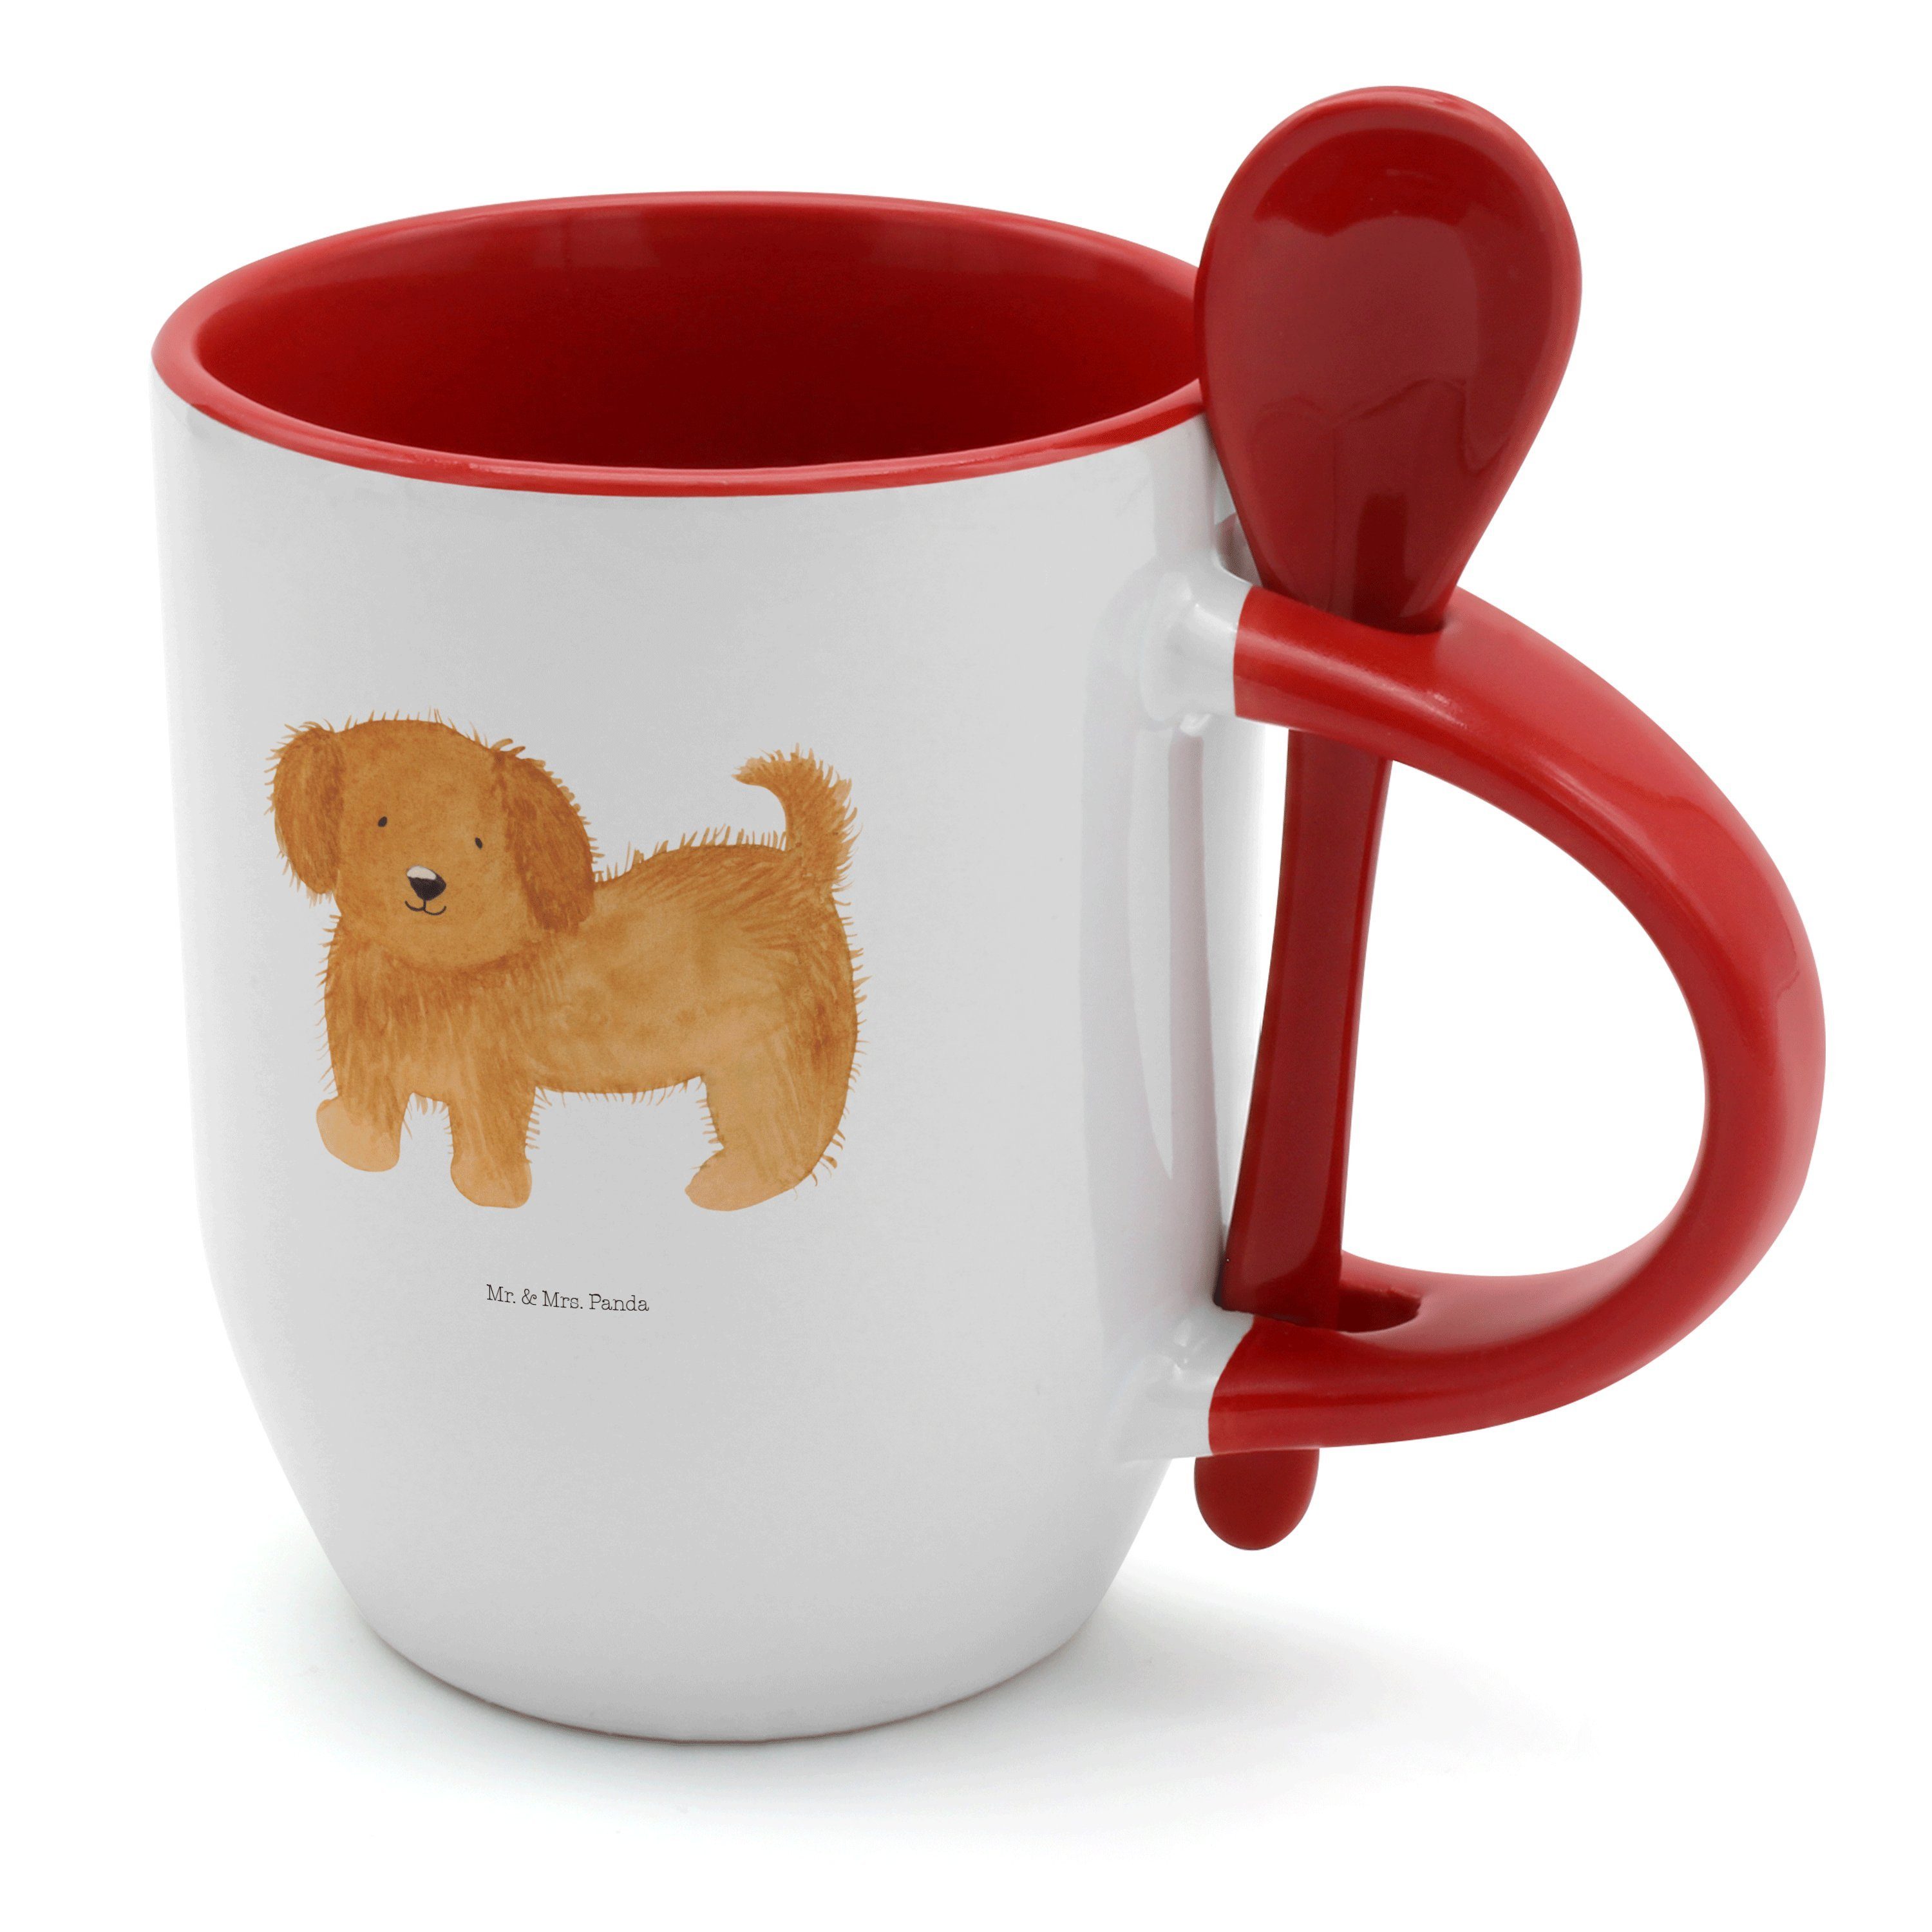 Mr. & Mrs. Panda Tasse Hund flauschig - Weiß - Geschenk, Hundeliebe, Tierliebhaber, Tasse mi, Keramik